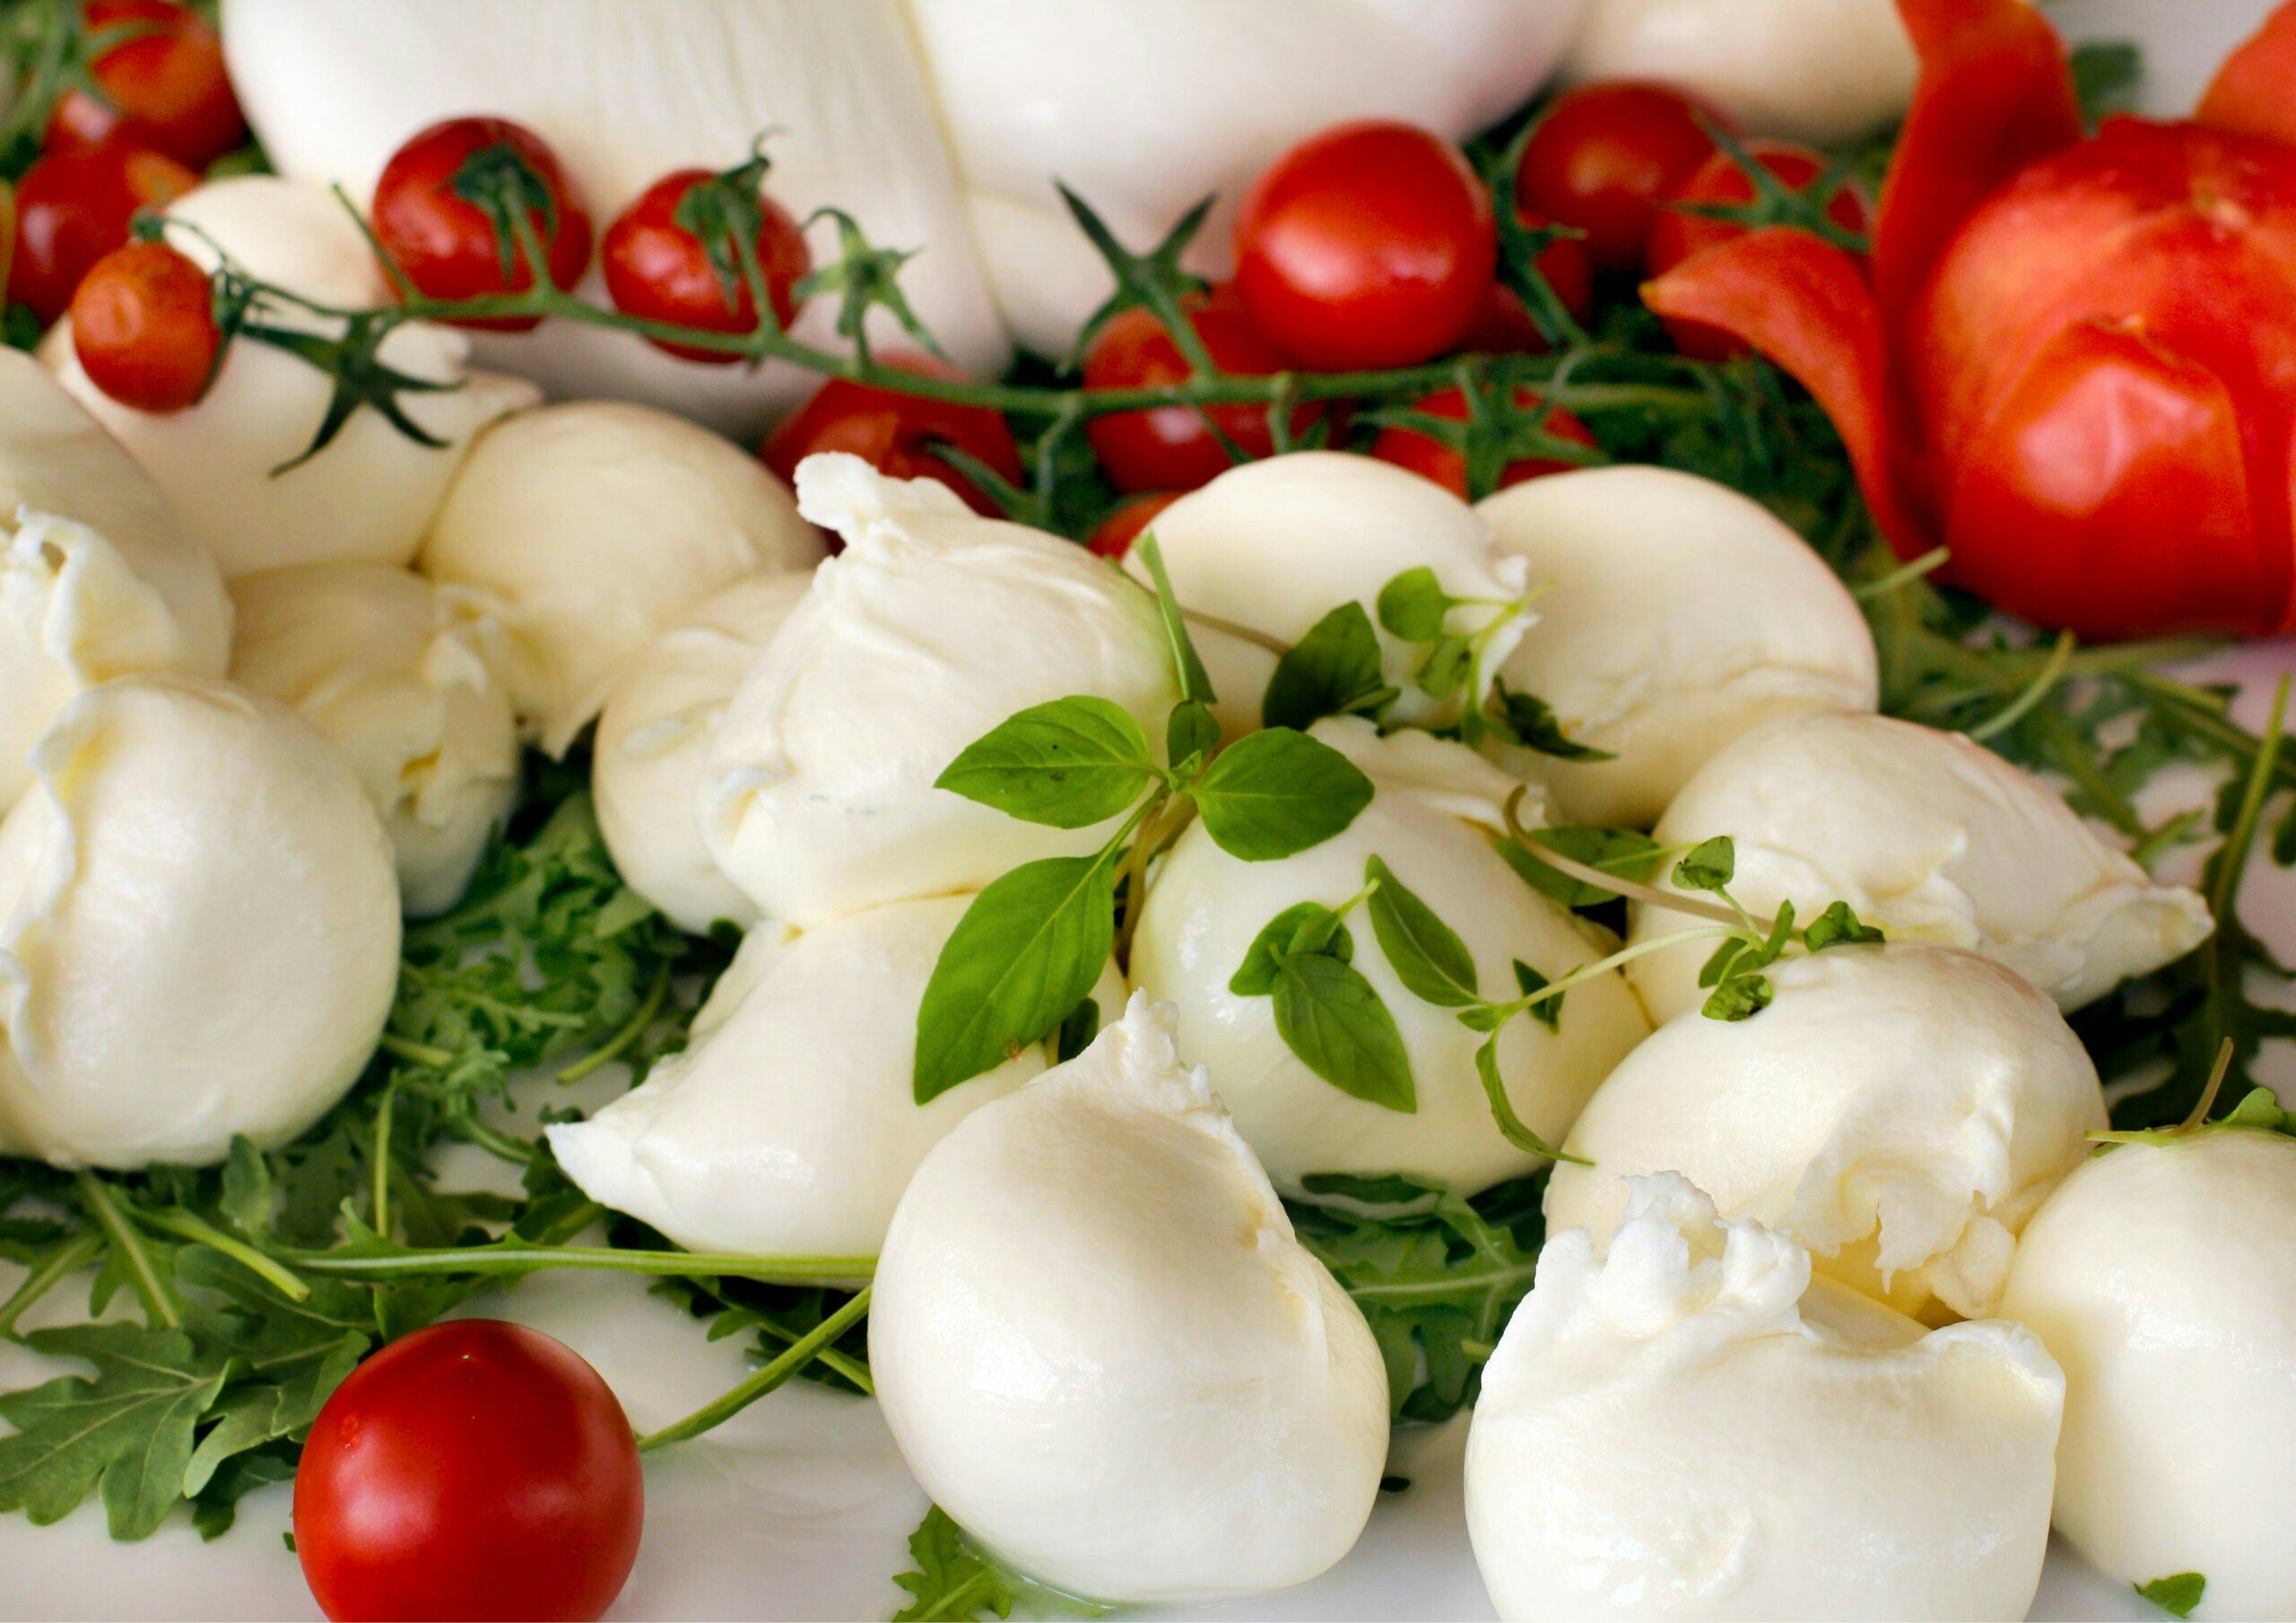 Meer dan de helft van 'Italiaanse' voedingsproducten is imitatie